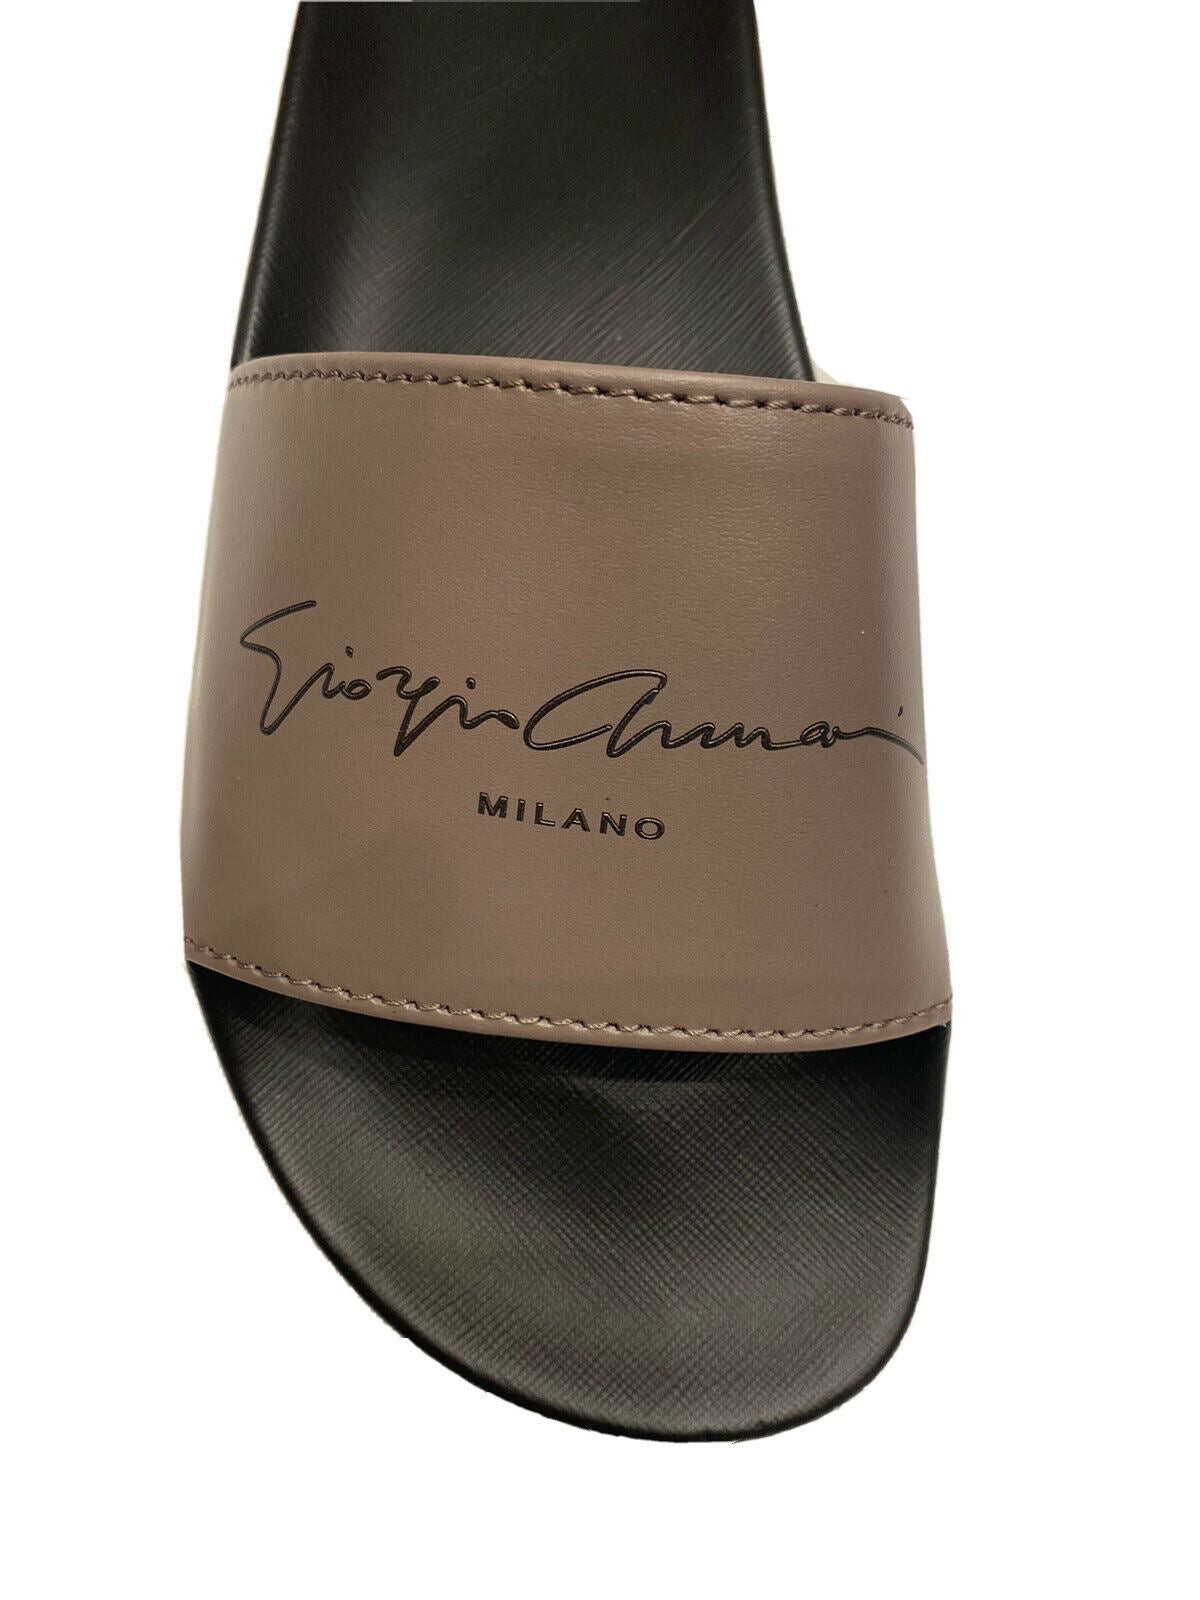 Мужские резиновые серые/черные сандалии Giorgio Armani 295 долларов США 11,5 США (46 ЕС) X2P069 